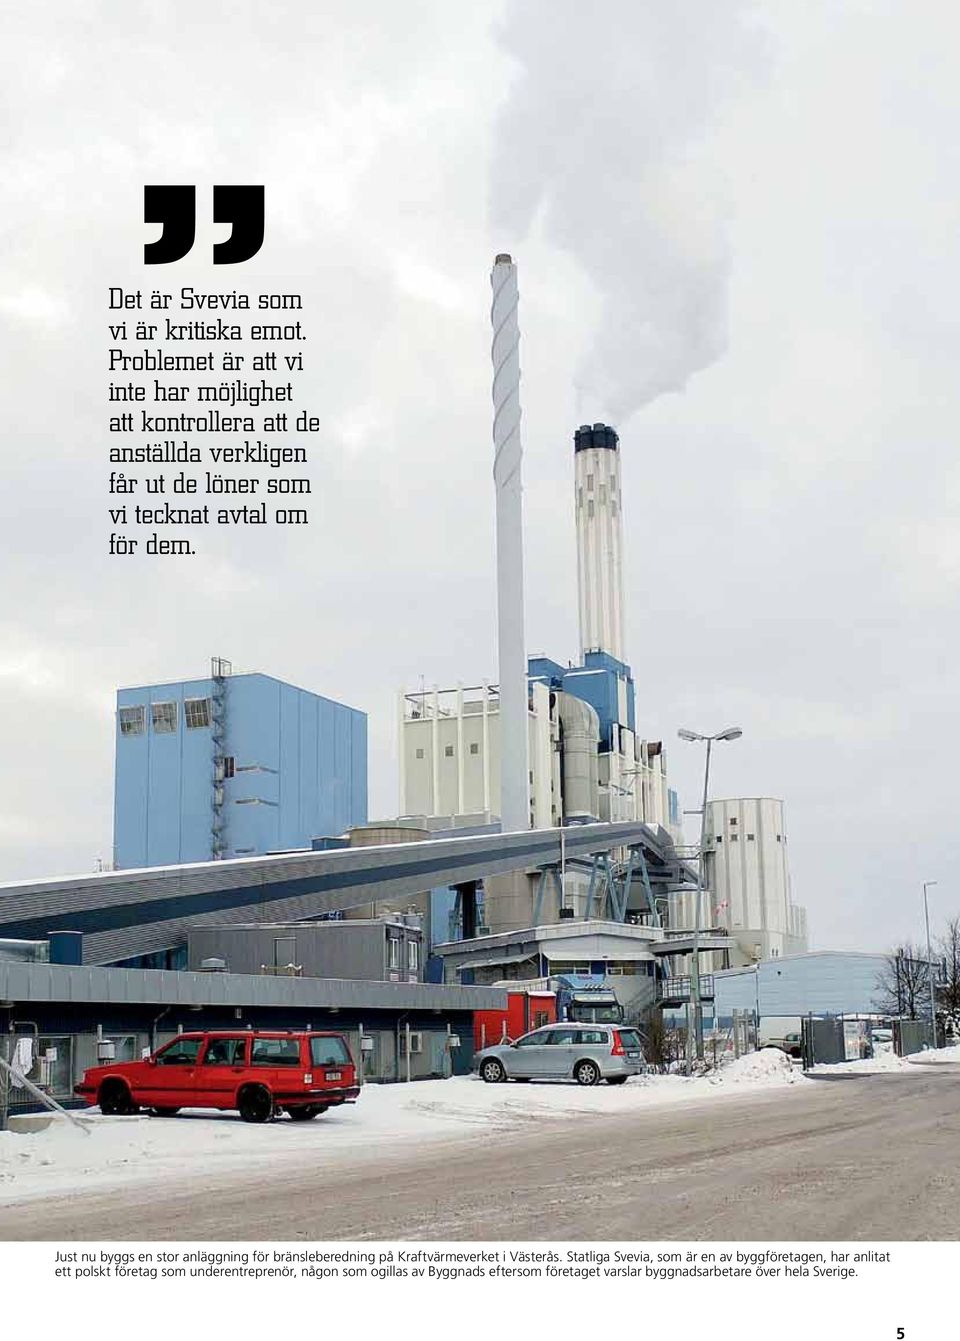 tecknat avtal om för dem. Just nu byggs en stor anläggning för bränsleberedning på Kraftvärmeverket i Västerås.